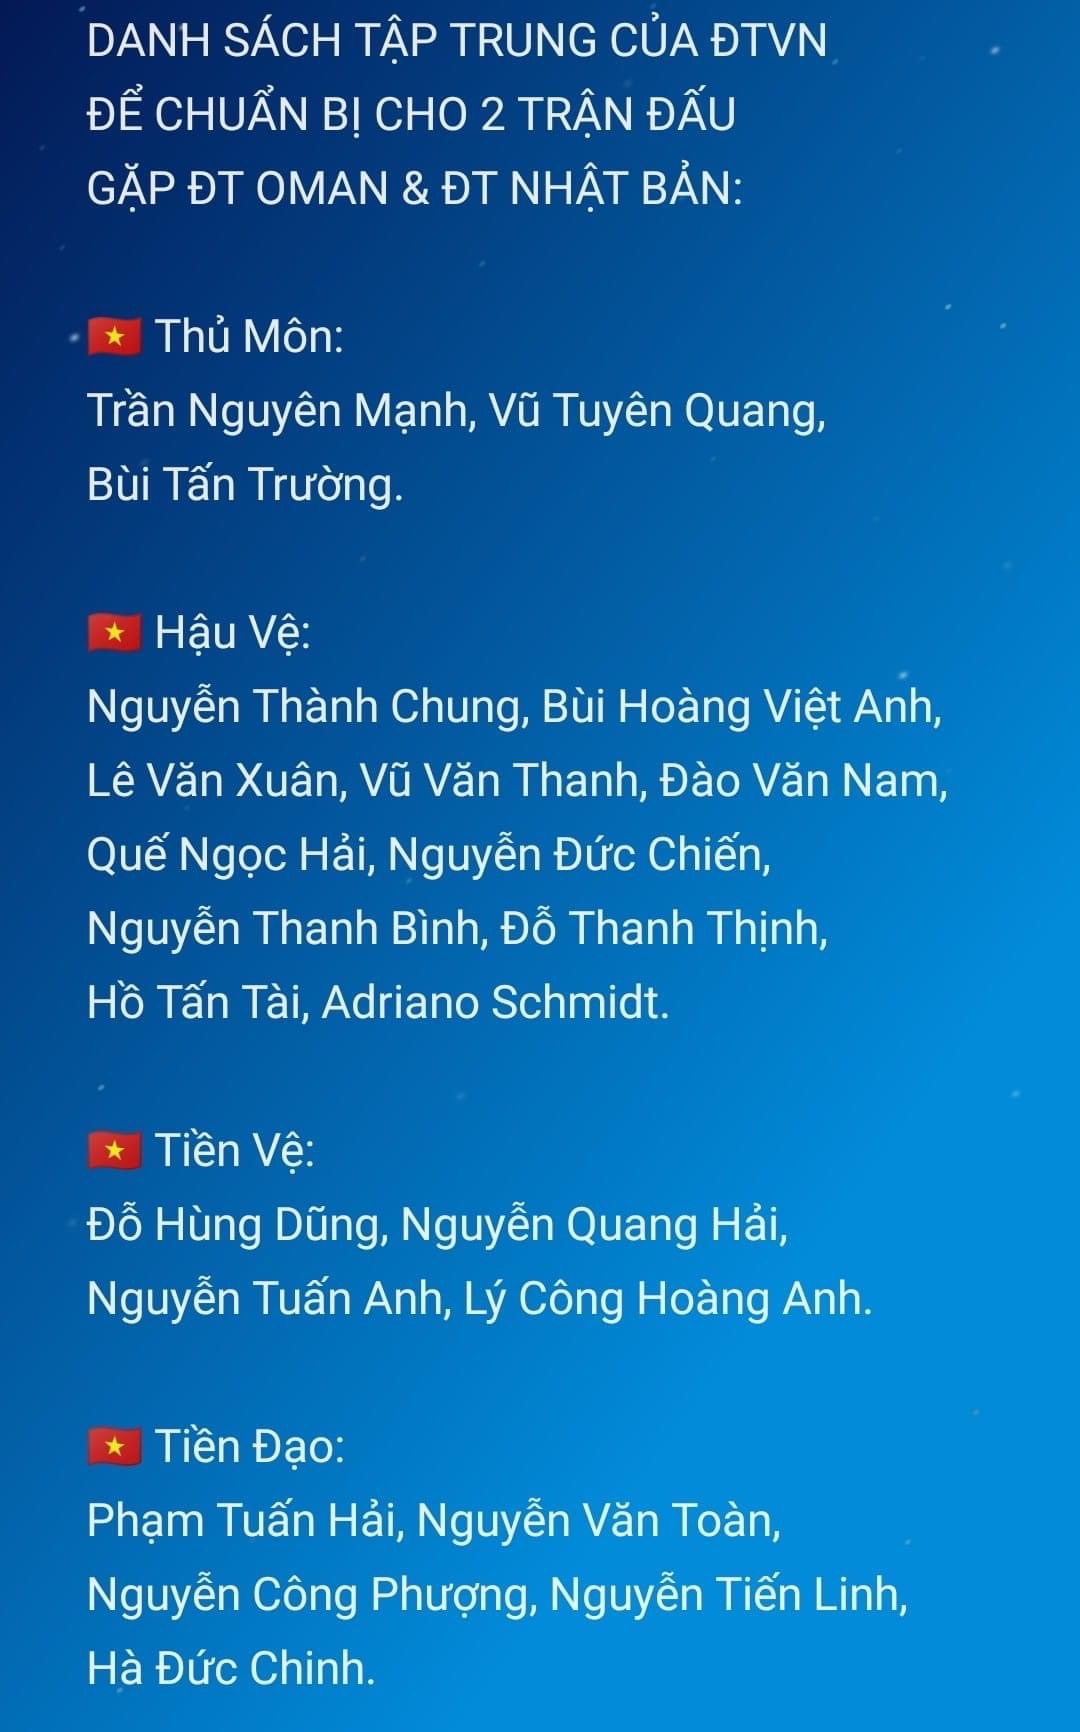 Danh sách nhân sự của đội tuyển Việt Nam hiện tại